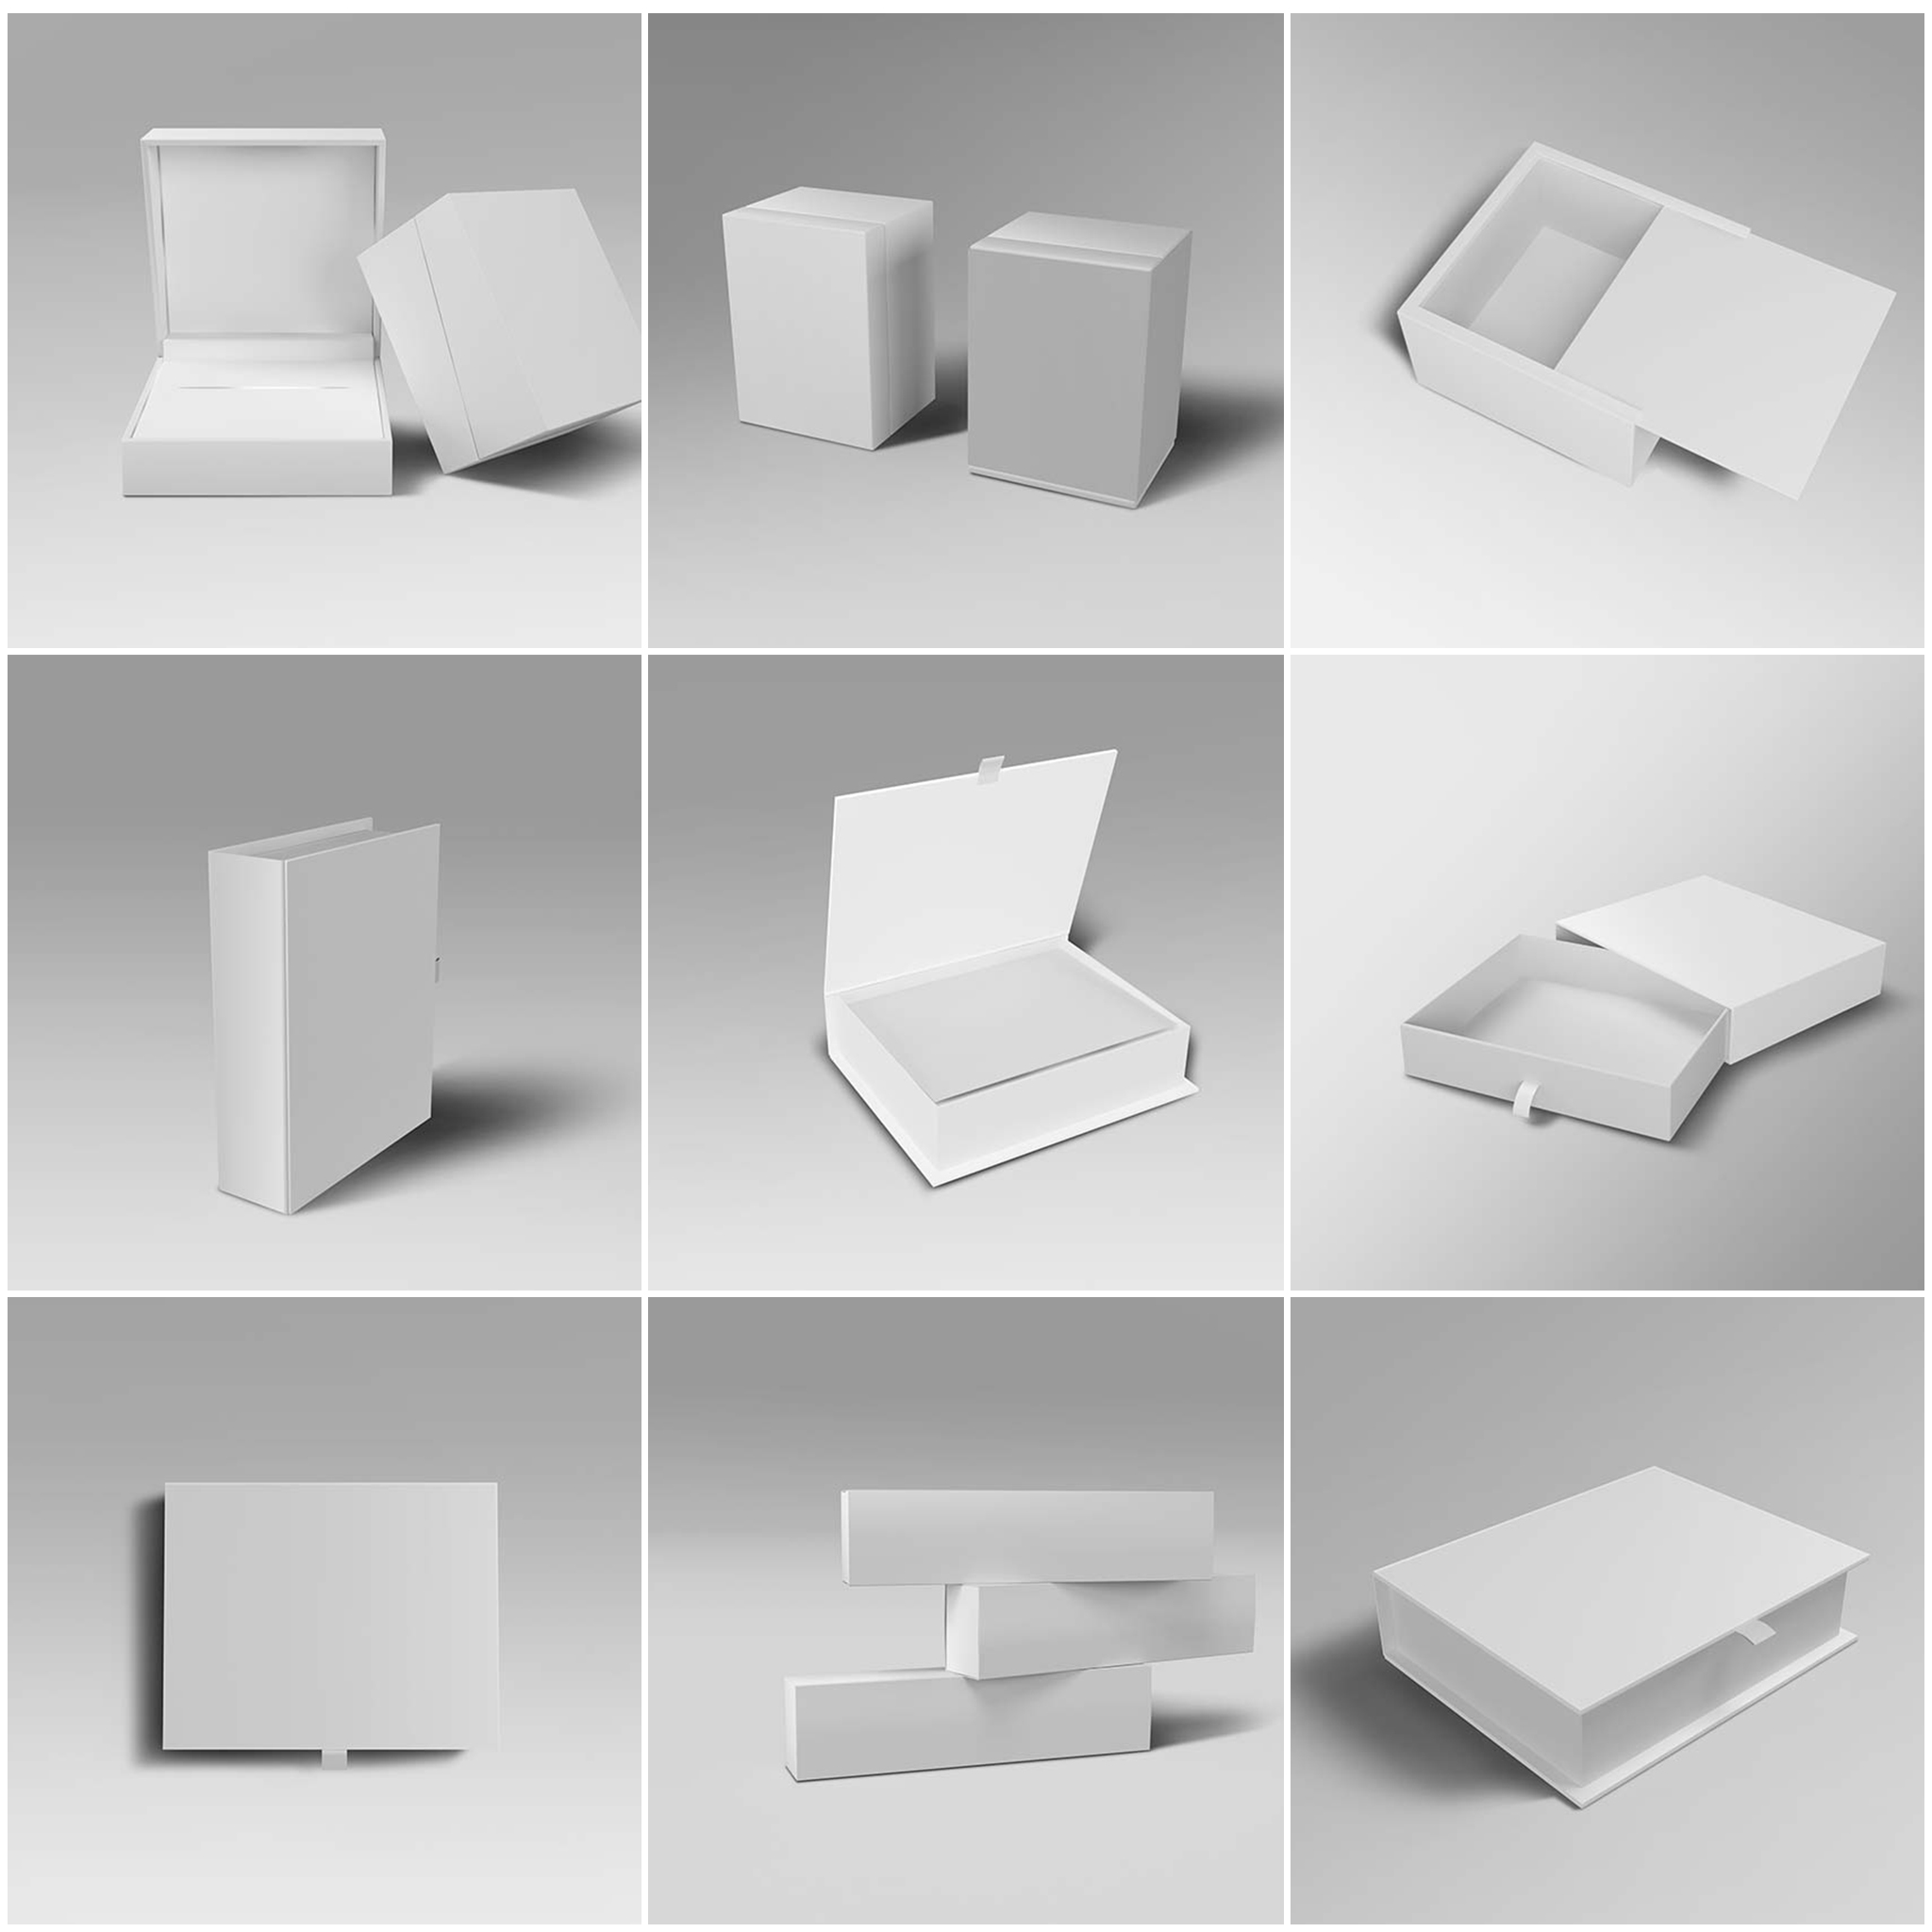 长方形硬卡翻盖纸盒礼品盒产品包装盒展示效果图vi智能图层ps样机